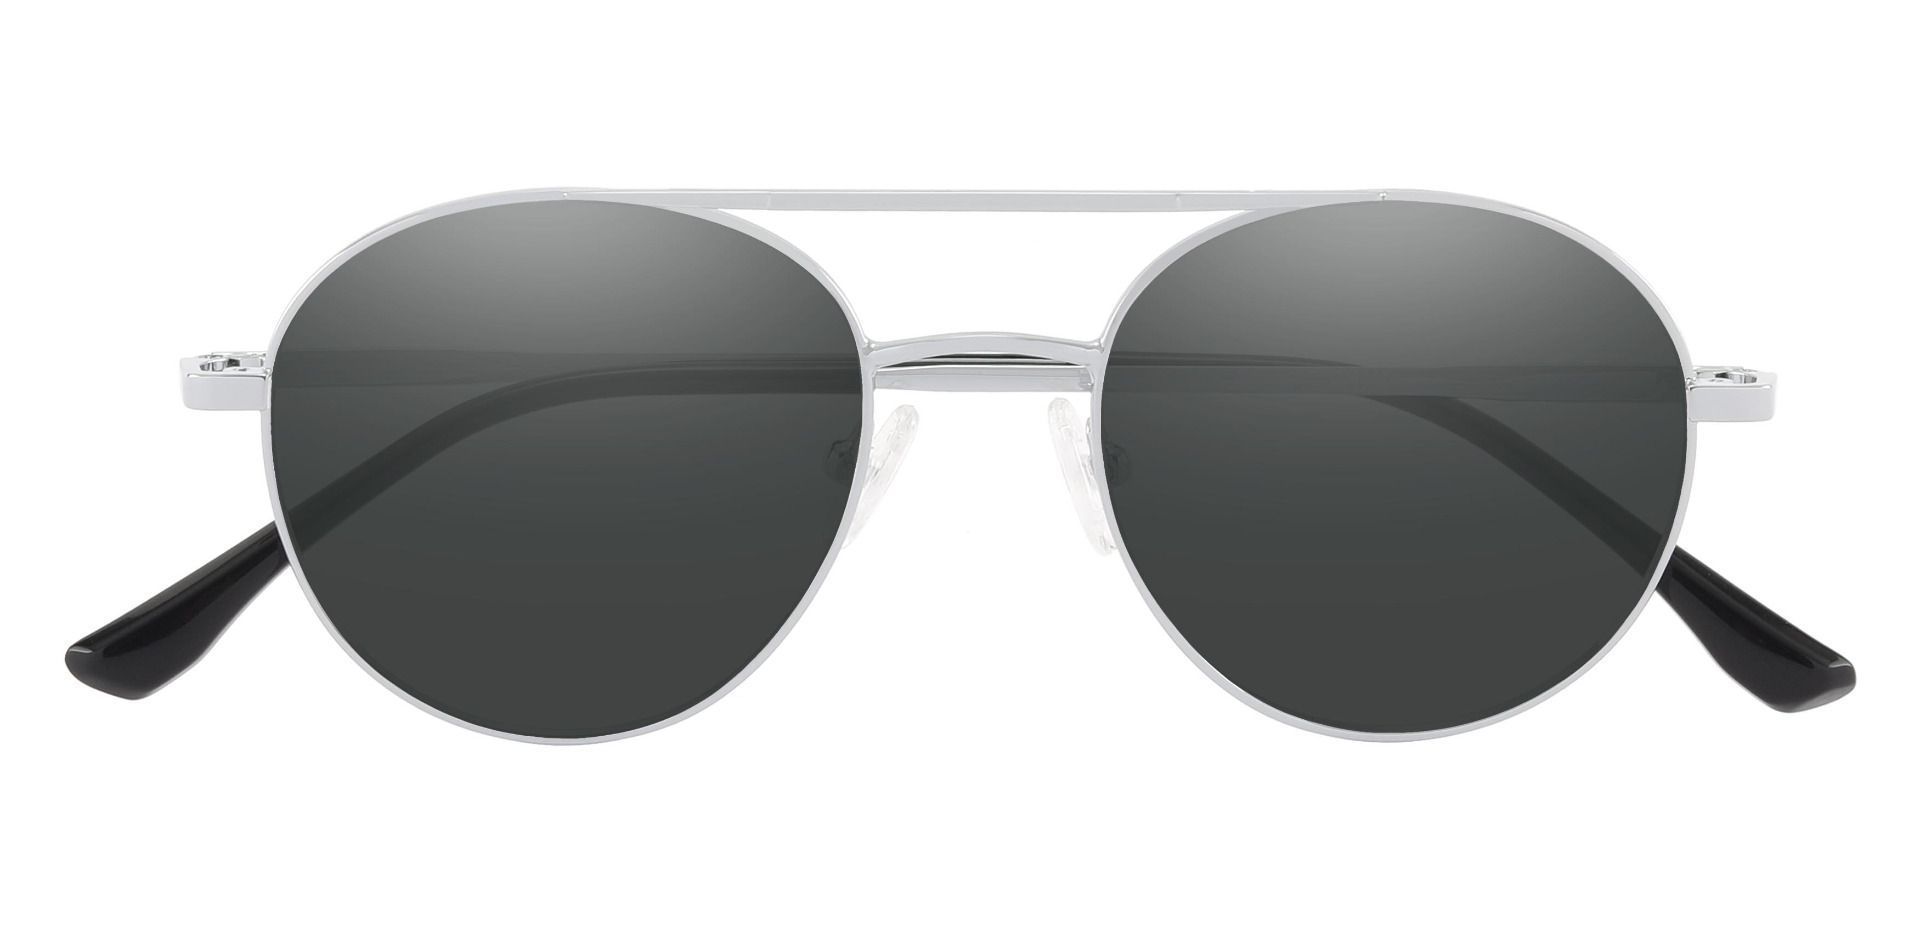 Cresson Aviator Prescription Sunglasses - Silver Frame With Gray Lenses